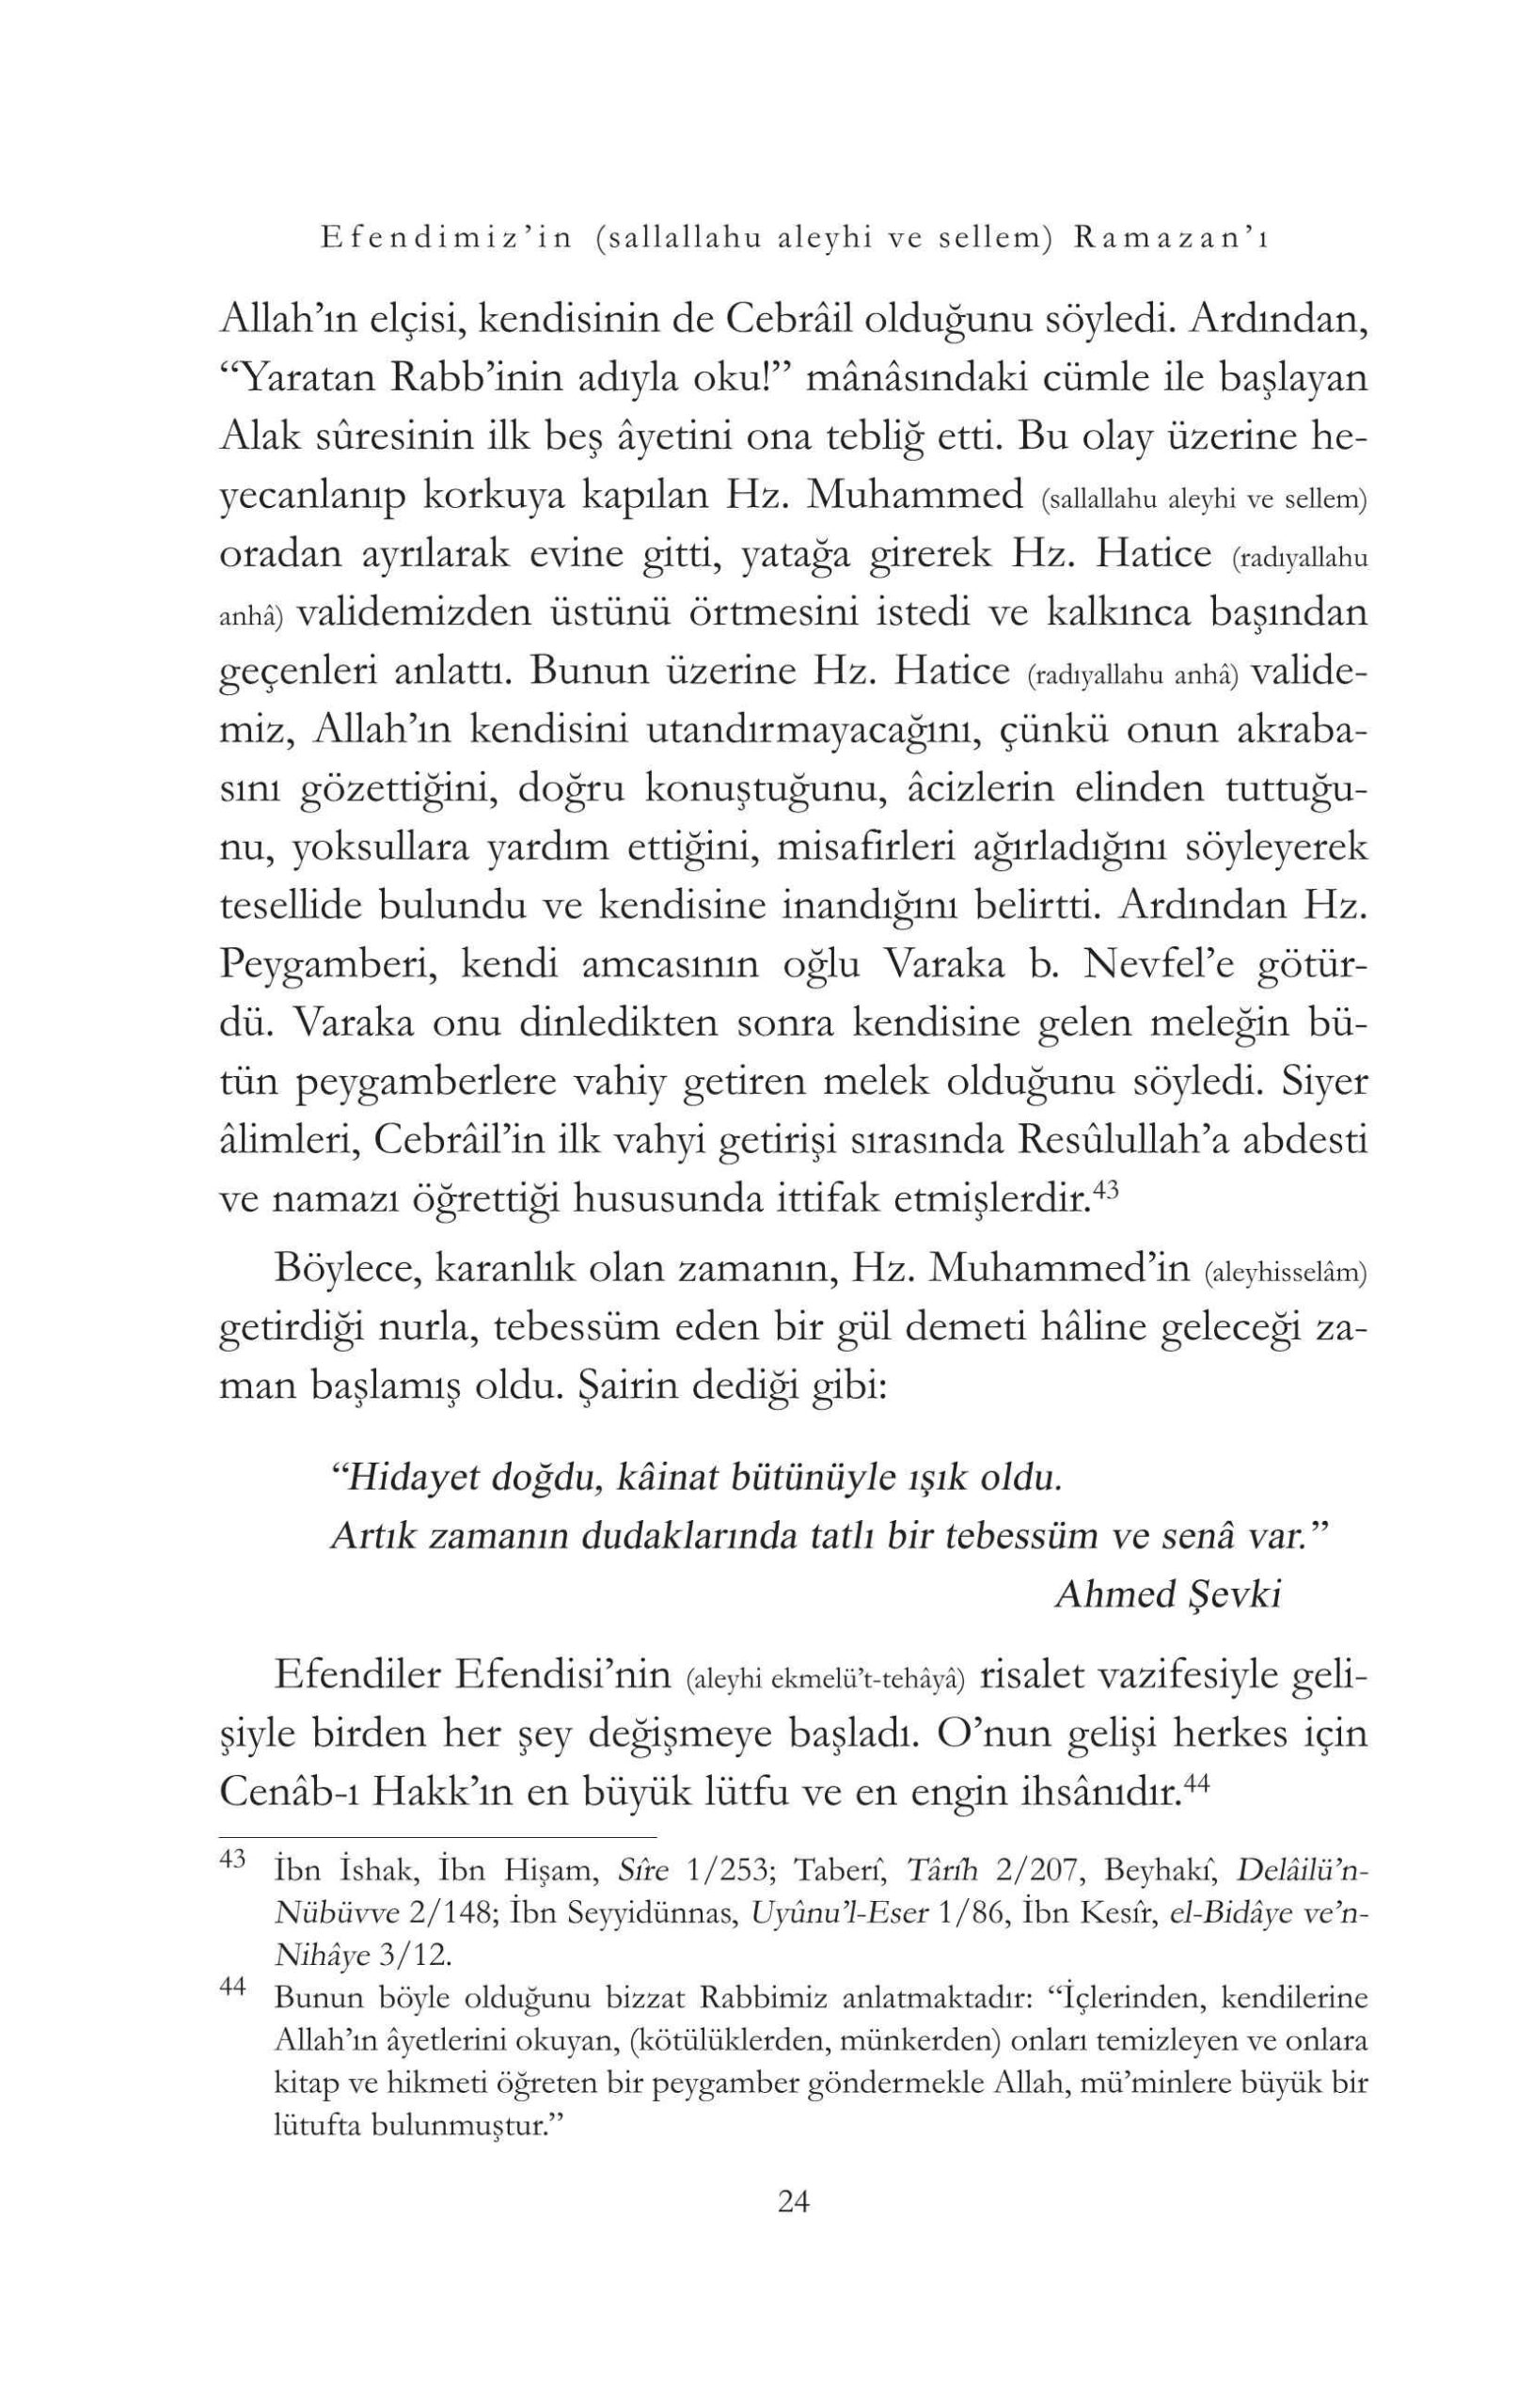 Sayit Kocer - Efendimizin sav Ramazani - IsikYayinlari.pdf, 111-Sayfa 